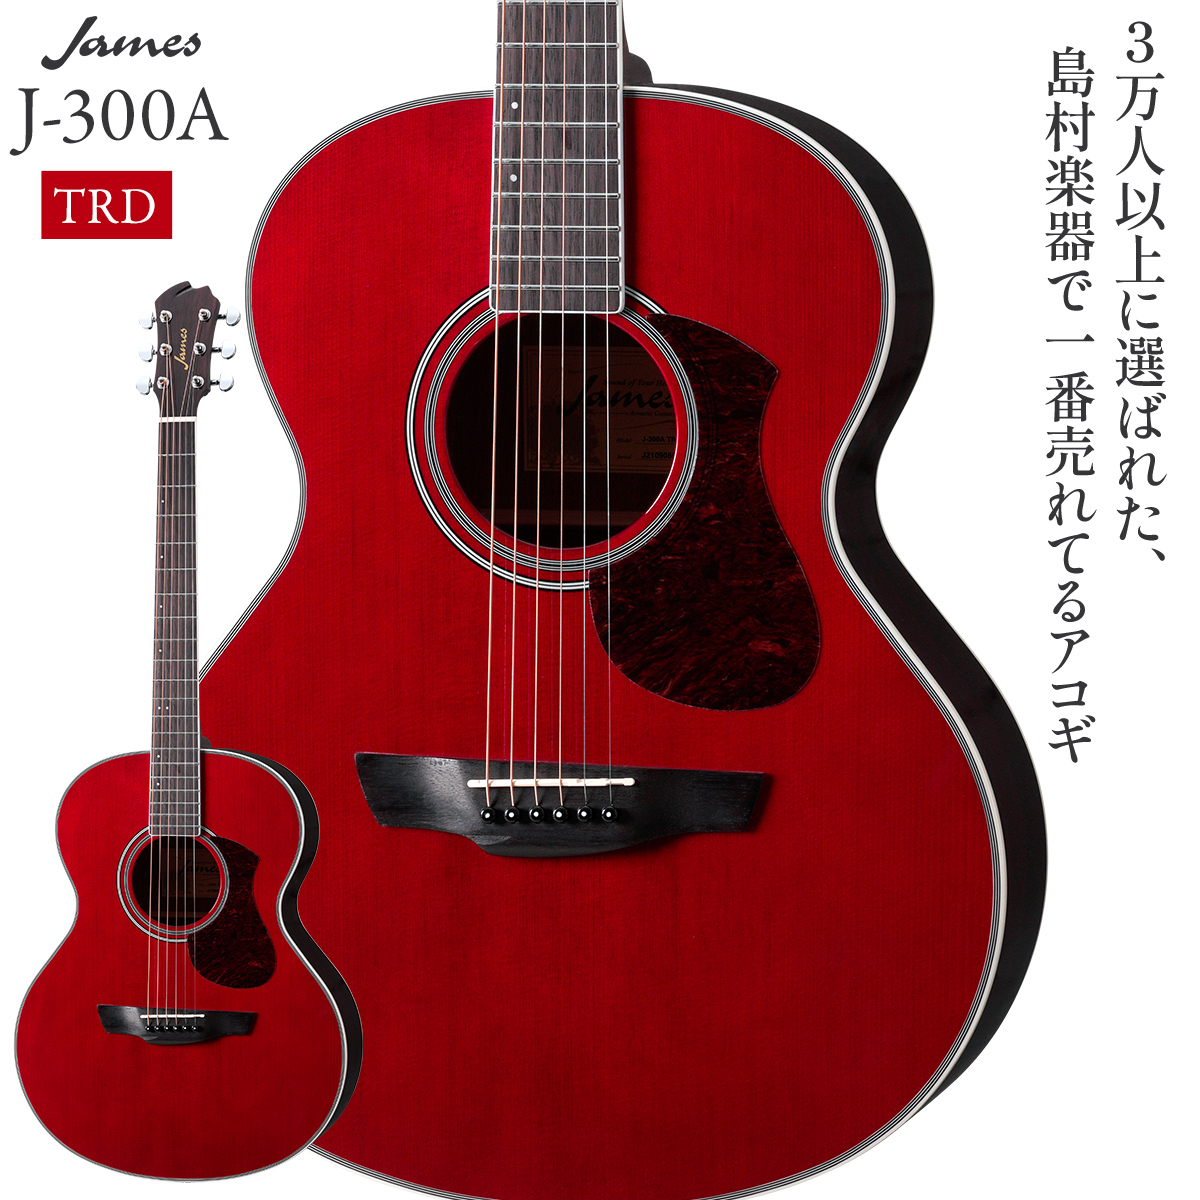 James J-300A TRD (トランスレッド) アコースティックギター ジェームス 【 ららぽーと愛知東郷店 】